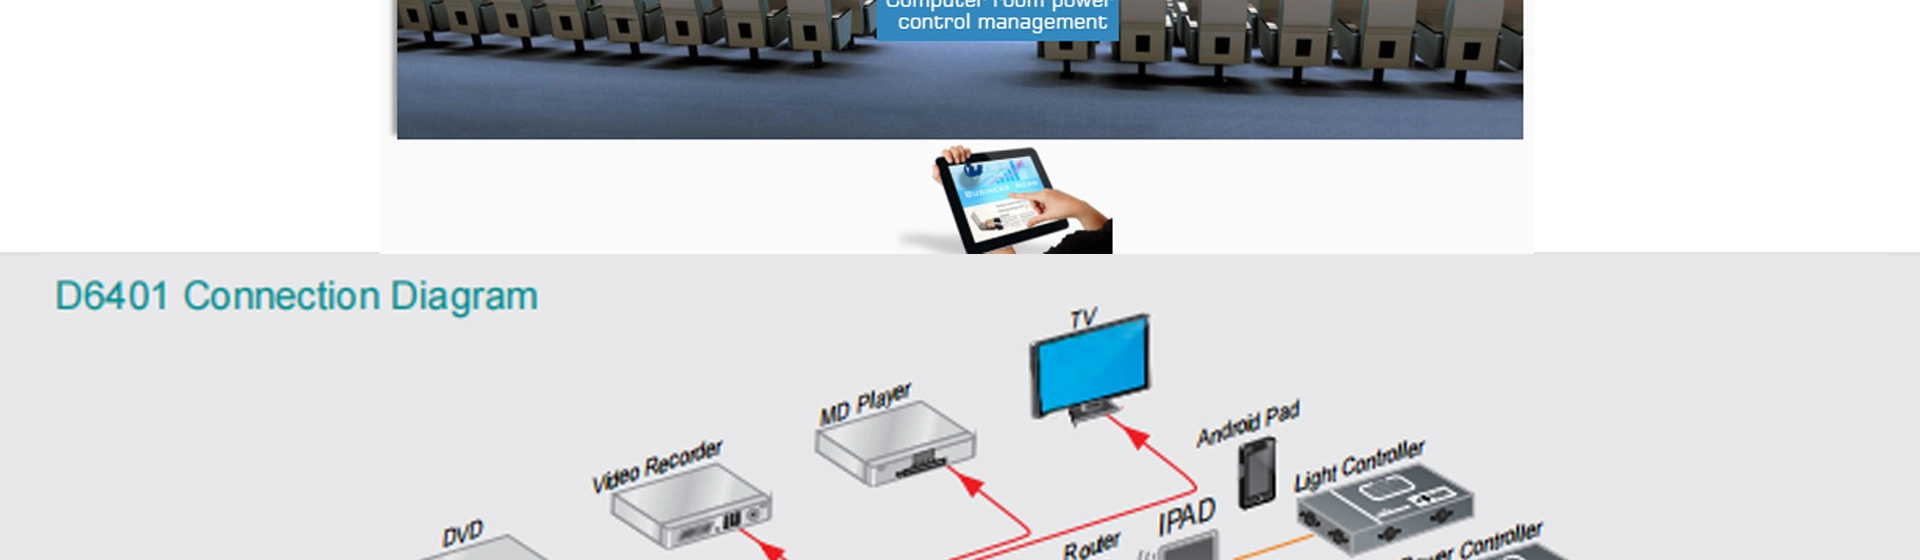 Pinagsamang Host ng Multimedia Central Control